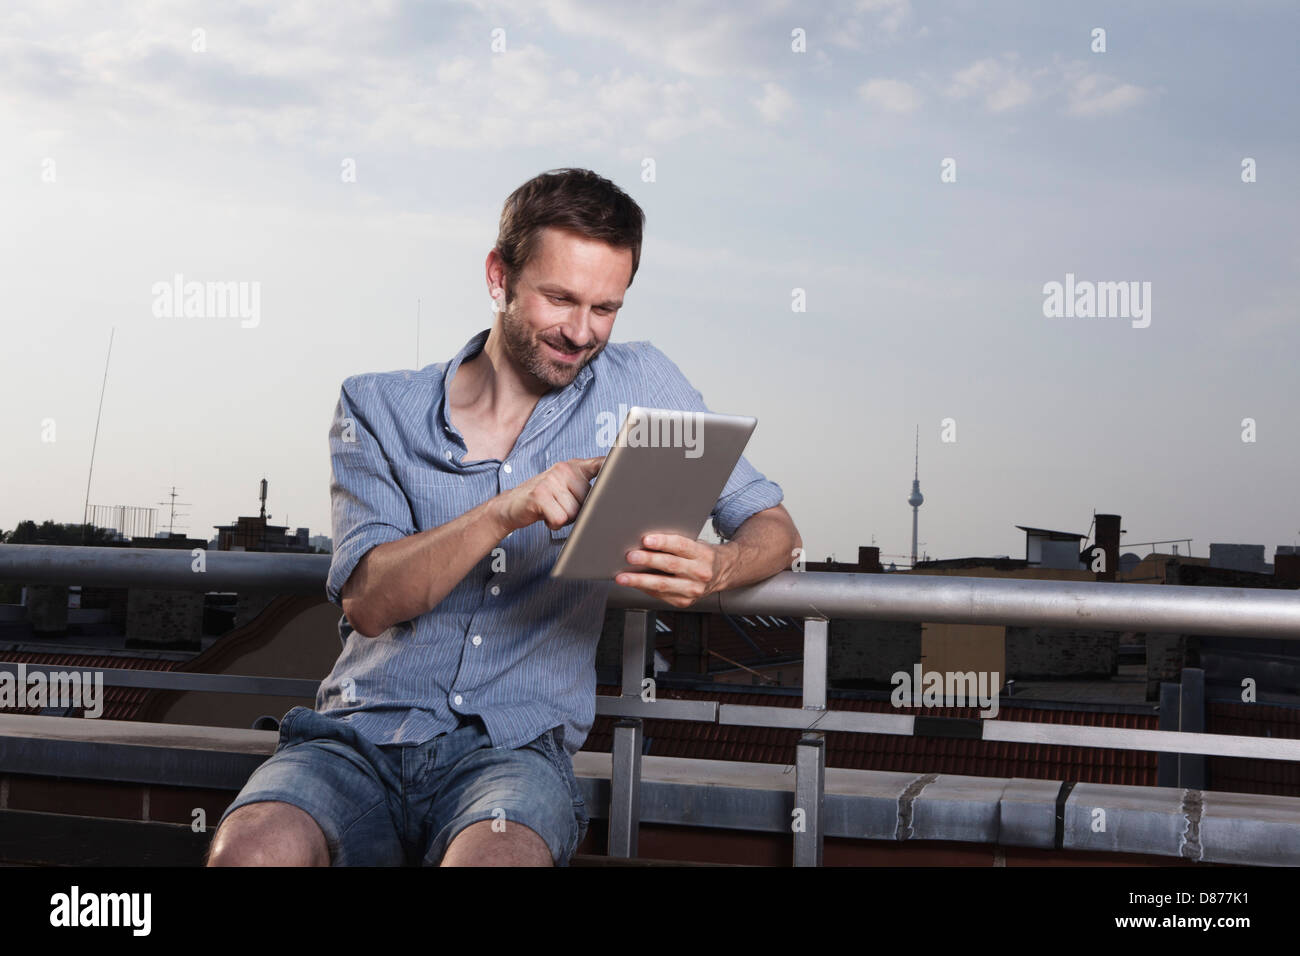 Germania, Berlino, uomo con tavoletta digitale sulla terrazza sul tetto, sorridente Foto Stock